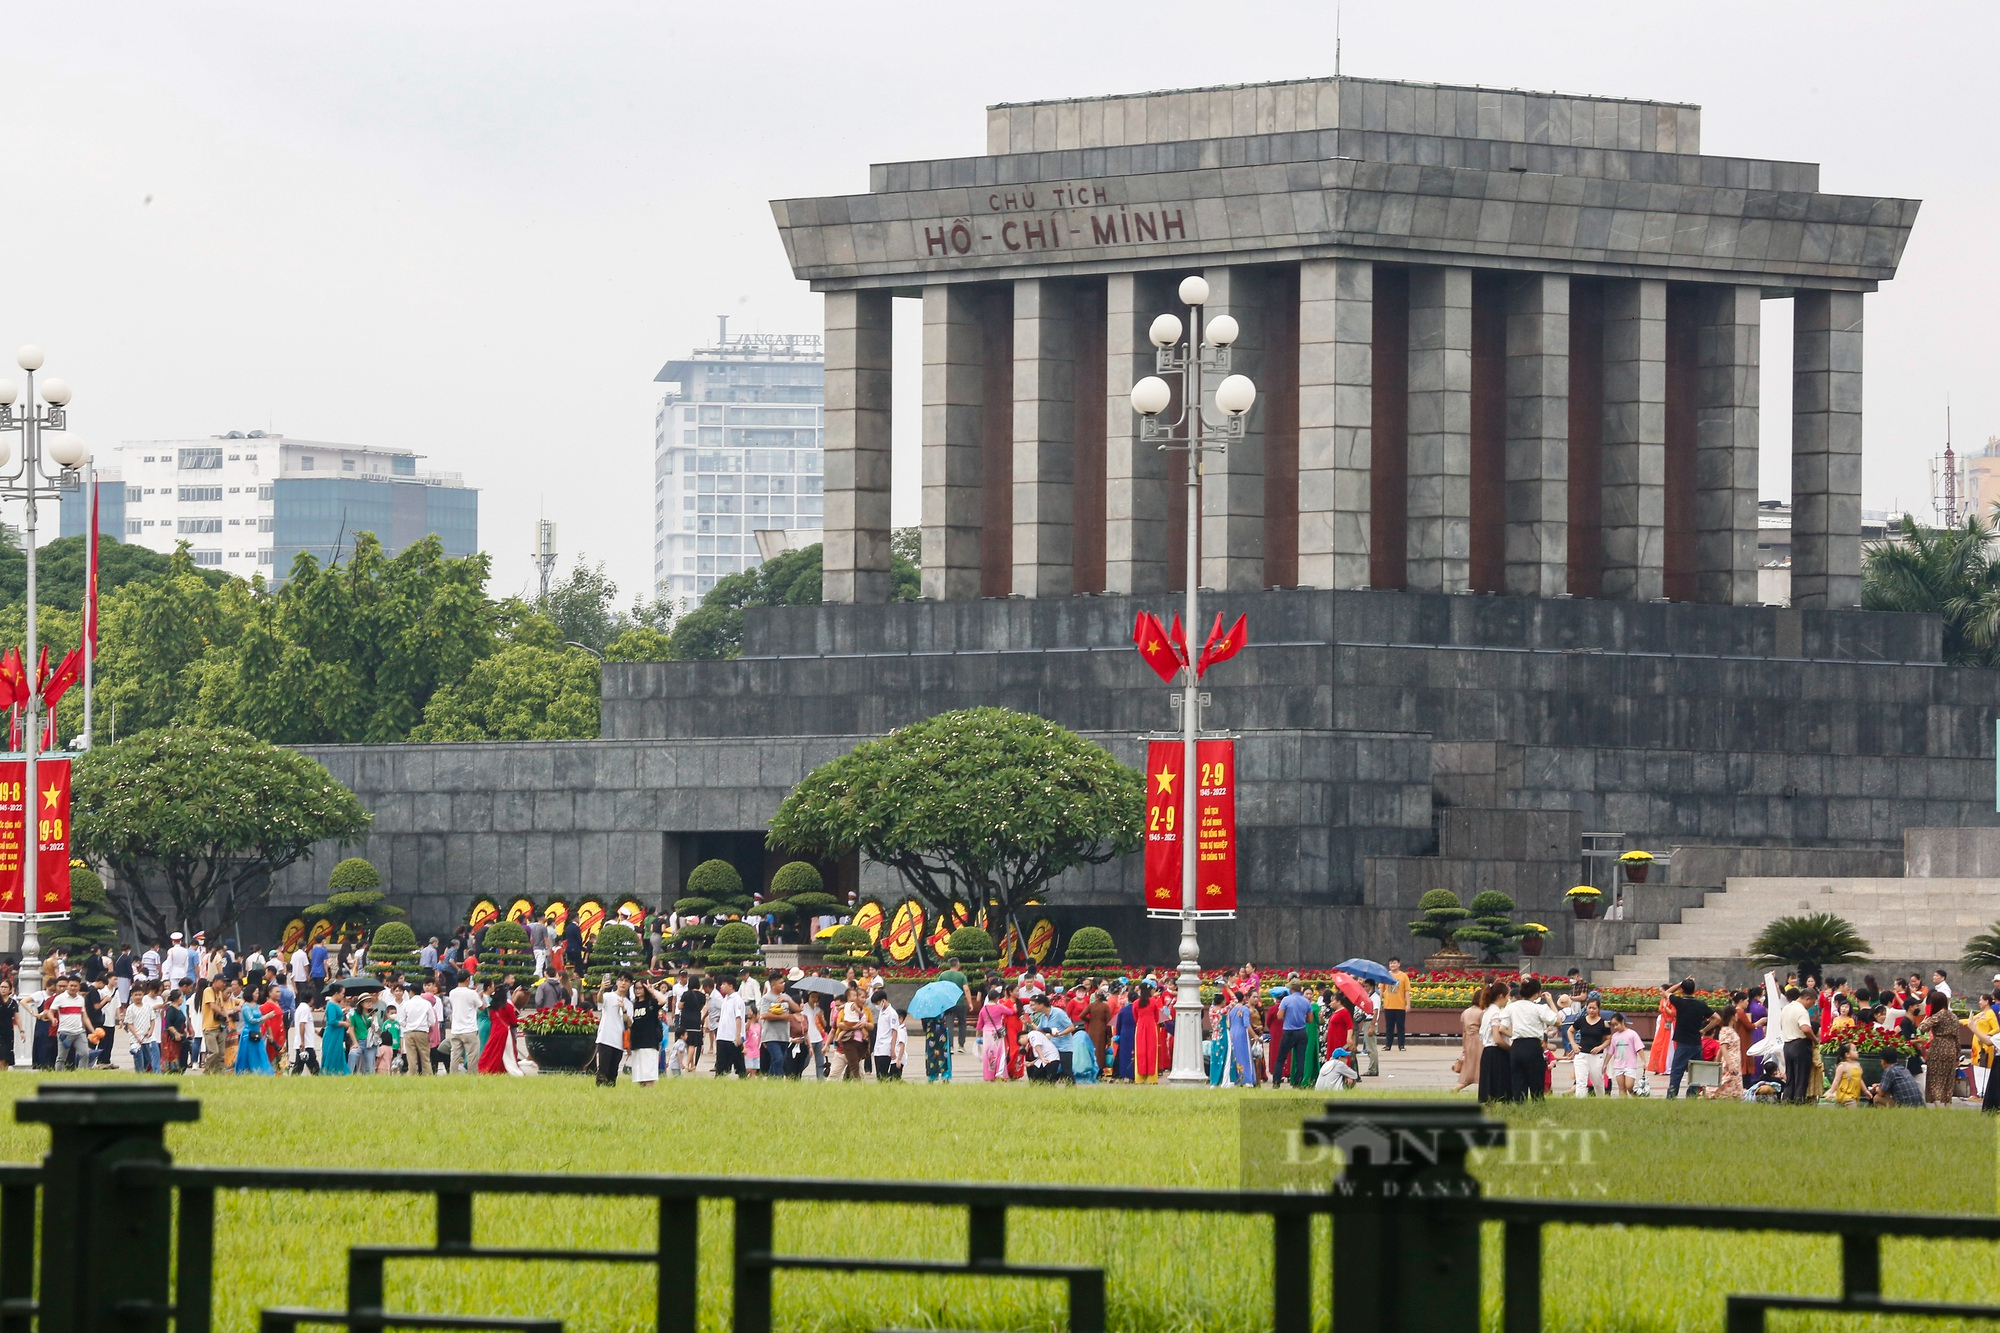 Khu vui chơi tại Hà Nội vắng lặng, người dân xếp hàng dài vào Lăng viếng Chủ tịch Hồ Chí Minh - Ảnh 13.